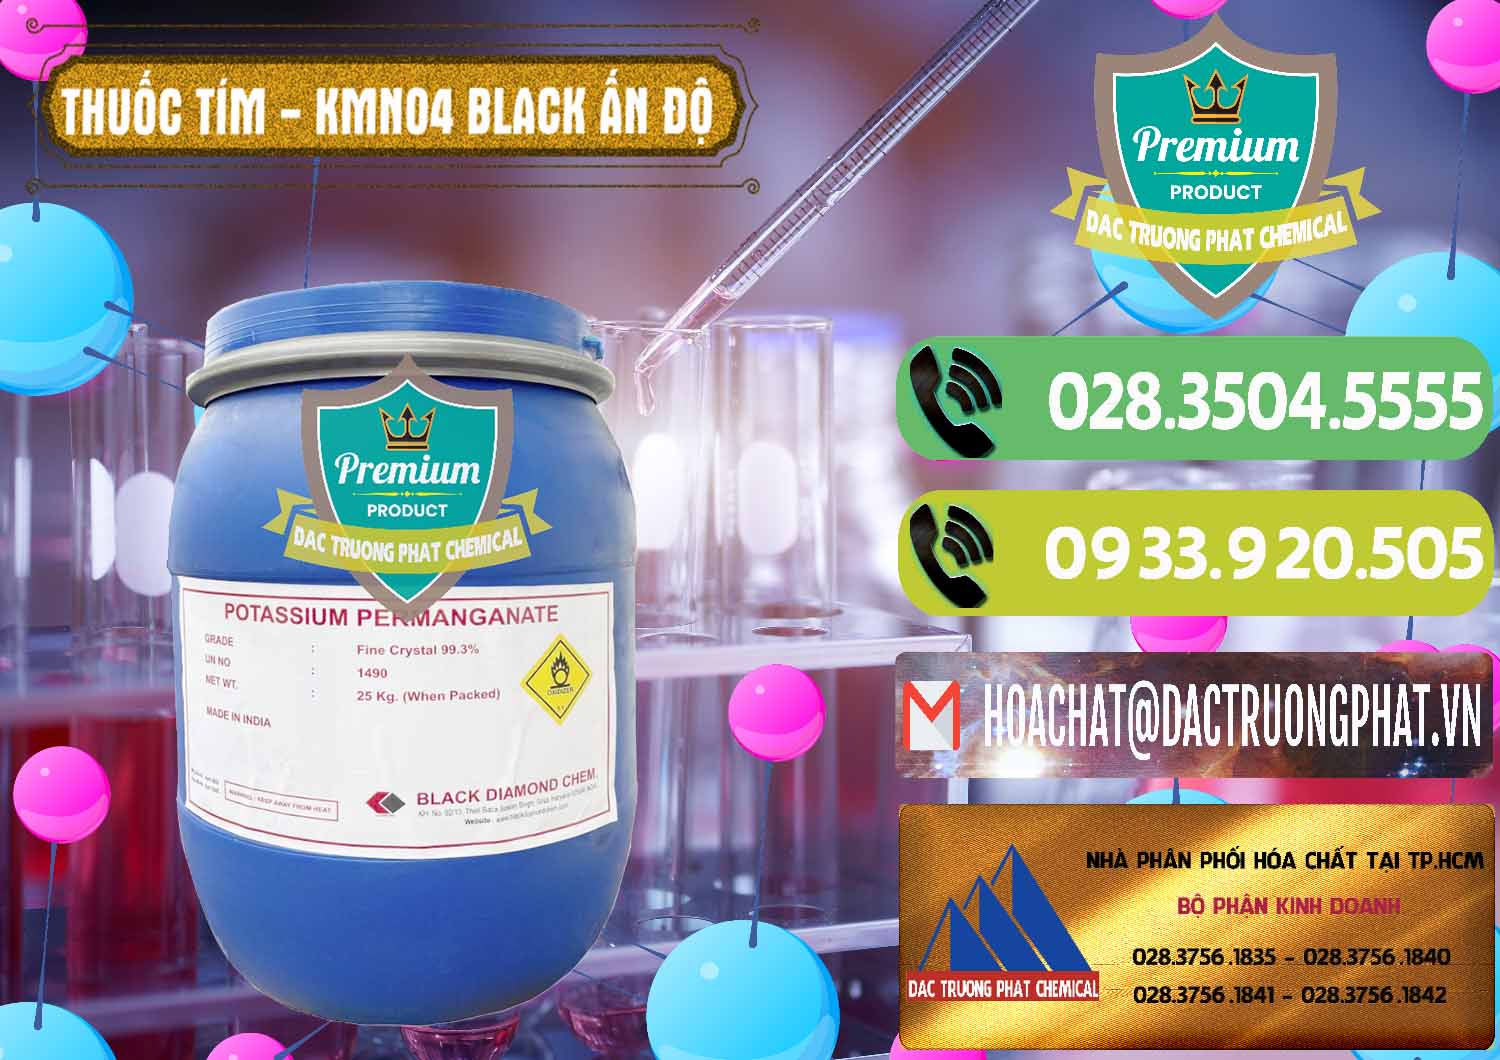 Nơi bán ( phân phối ) Thuốc Tím - KMNO4 Black Diamond Ấn Độ India - 0414 - Cty phân phối ( cung cấp ) hóa chất tại TP.HCM - hoachatmientay.vn